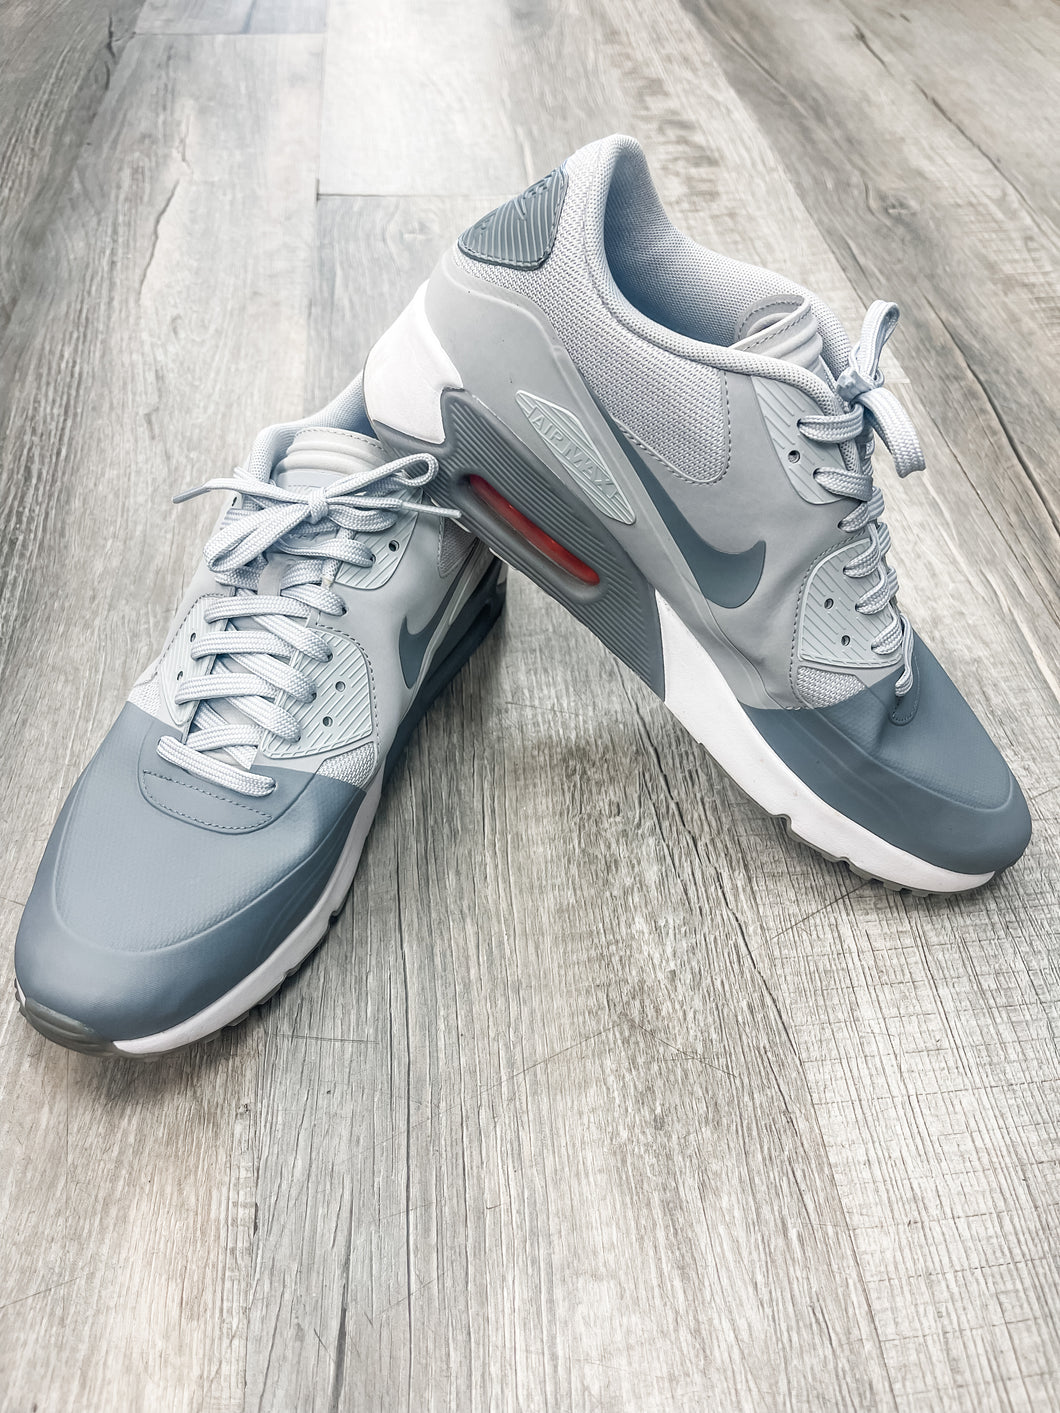 Nike Men’s Athletic Shoes Size 10.5 * - Plato's Closet Bridgeville, PA